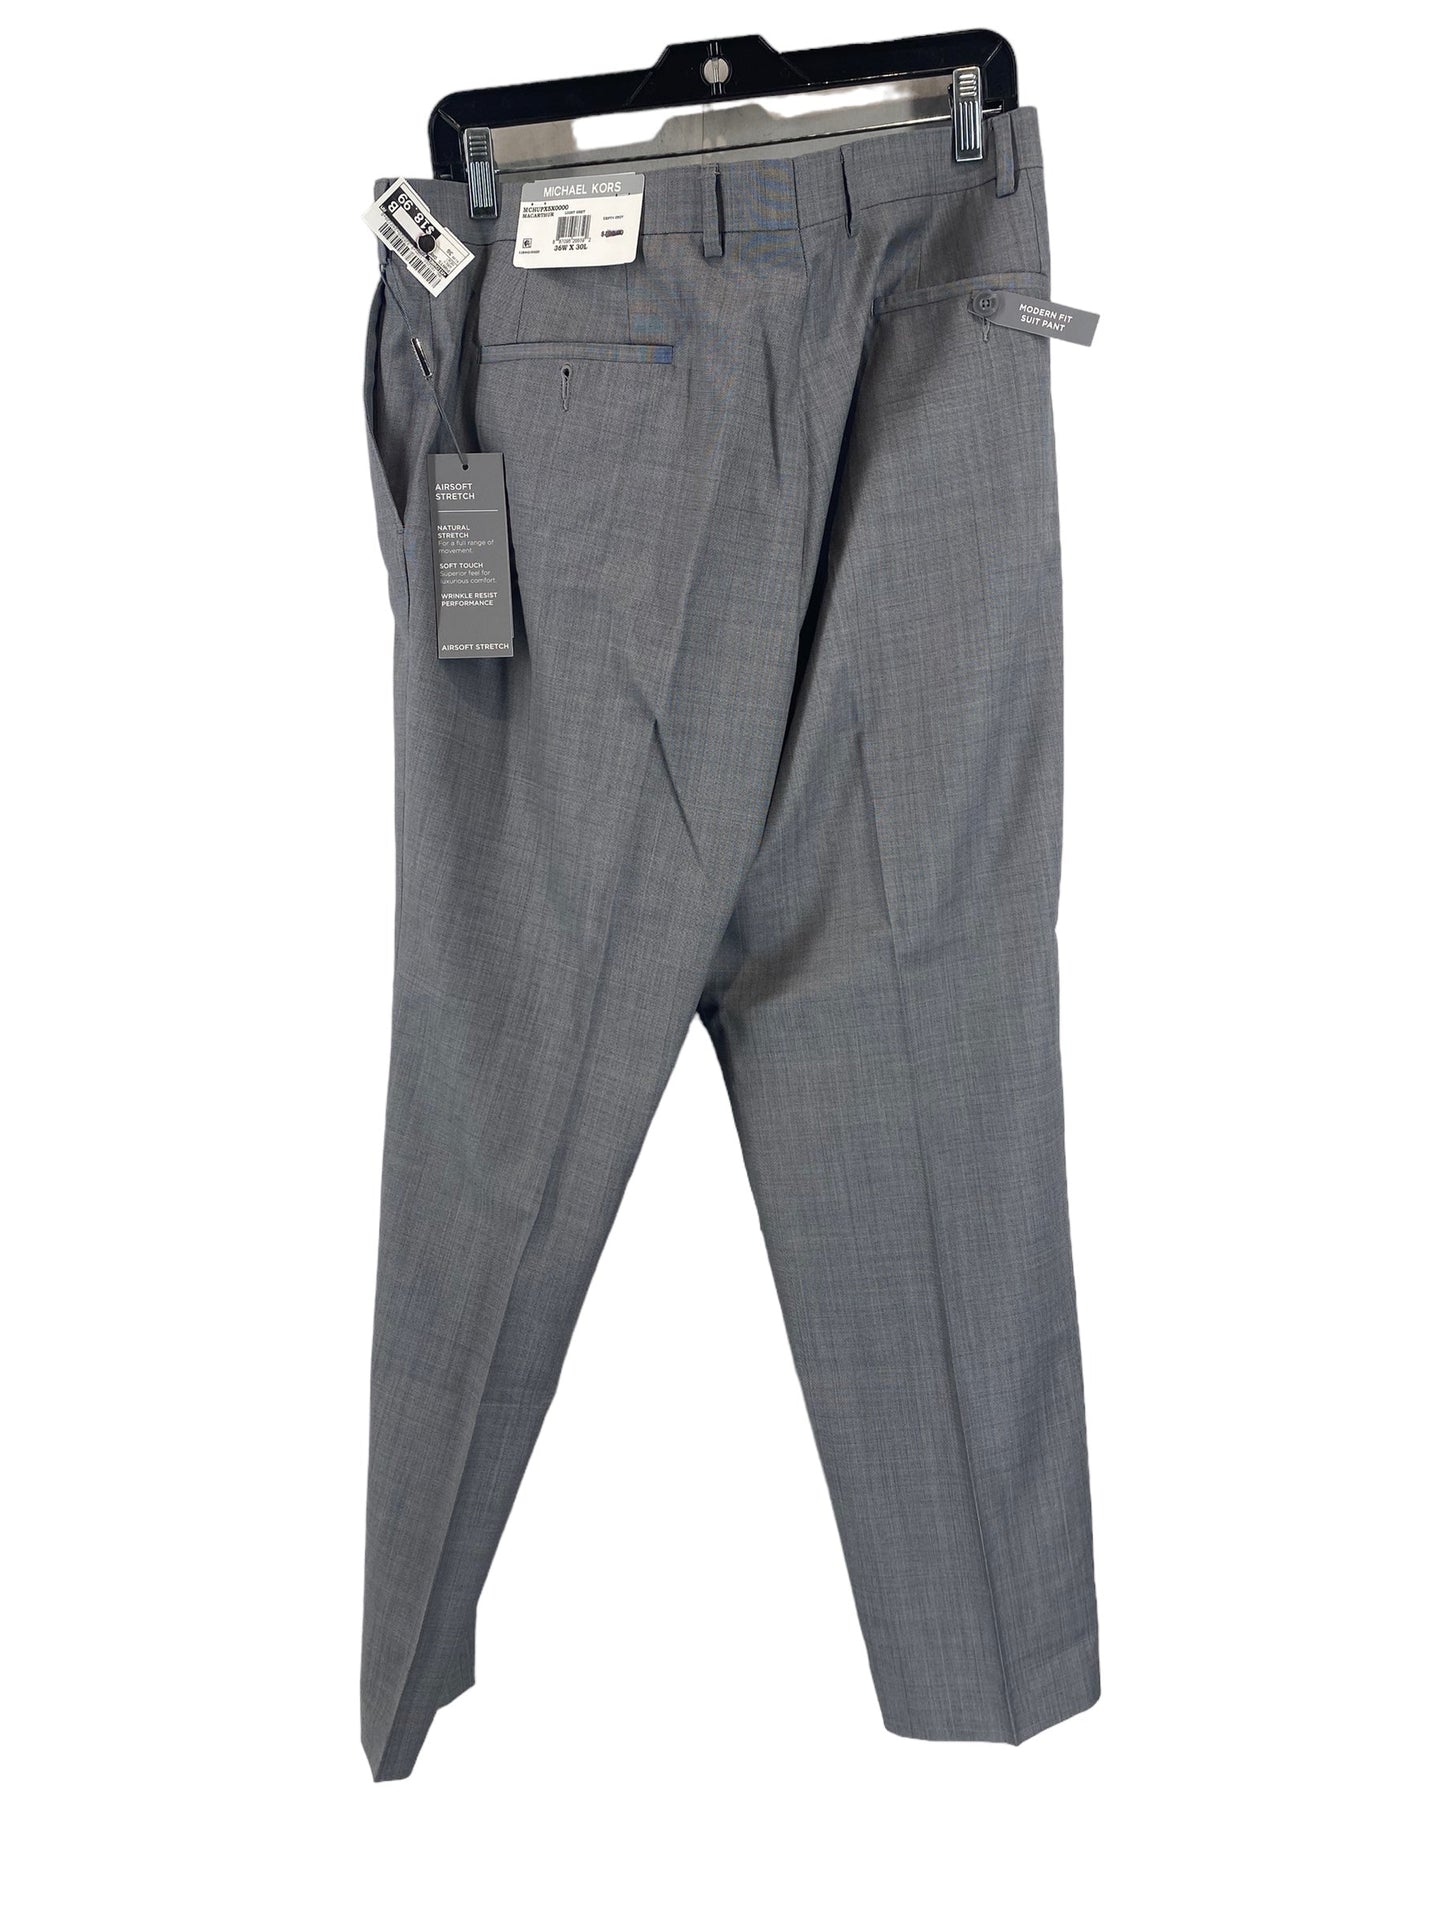 Pants Dress By Michael Kors  Size: 36